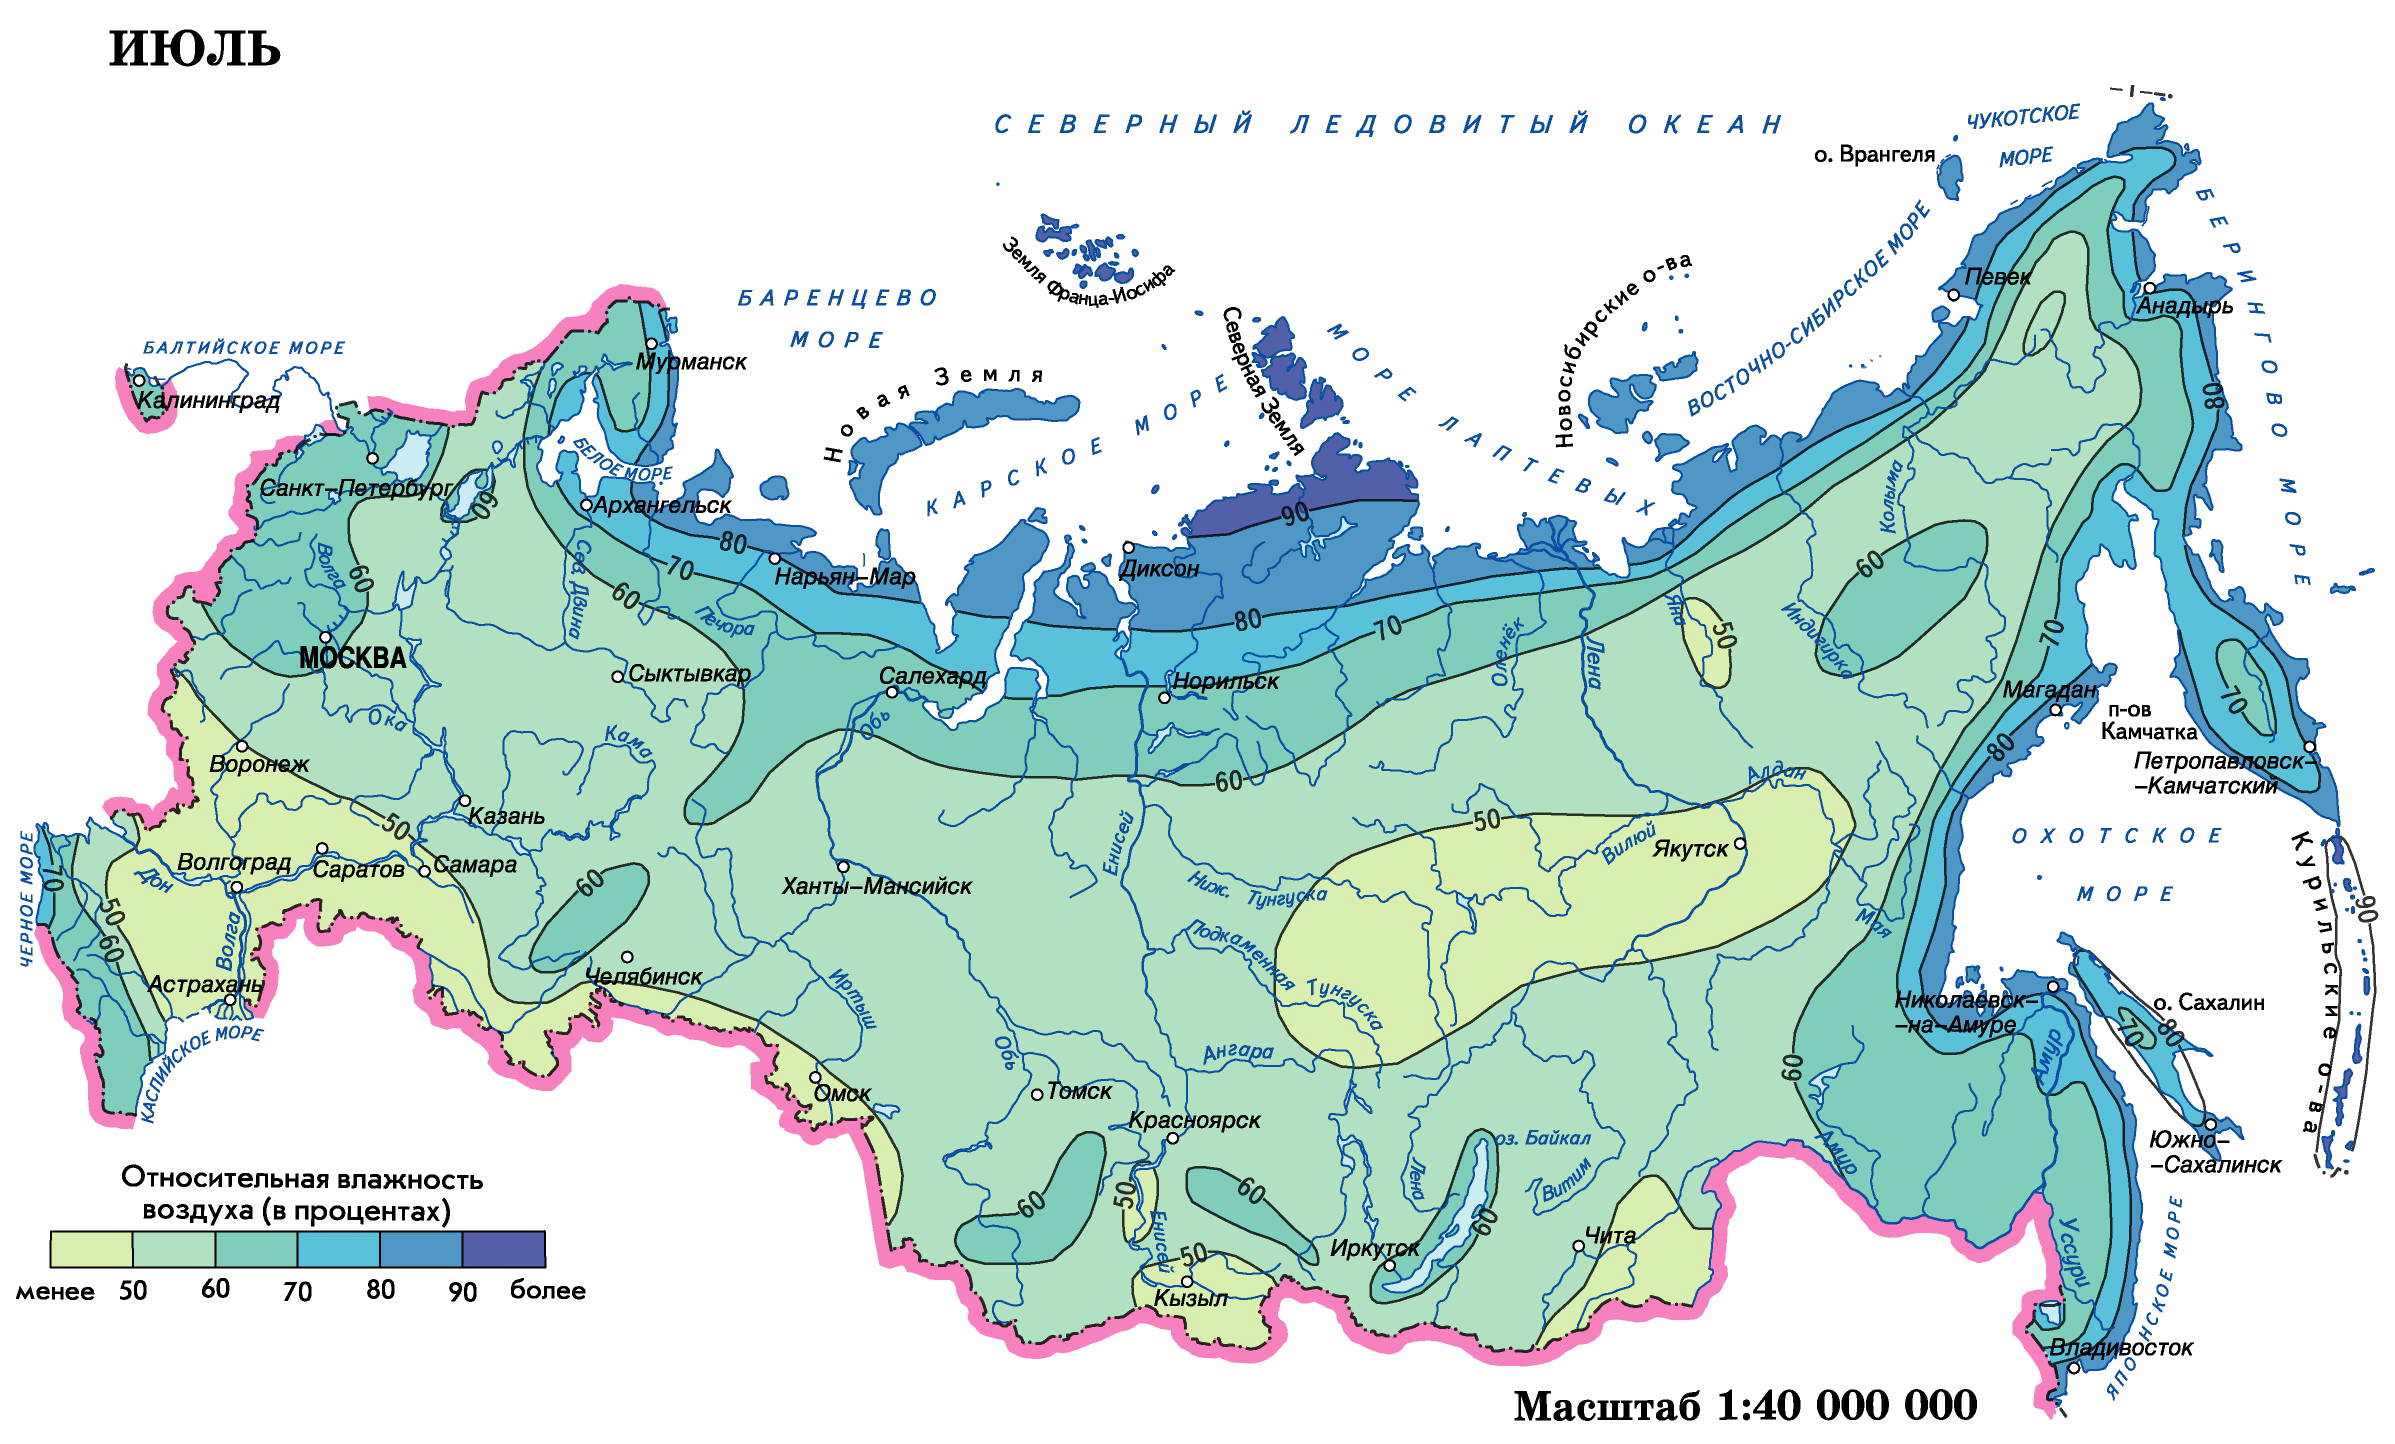 Где в тайге самые низкие температуры зимой. Карта влажности воздуха России. Карта влажности климата России. Карта влажности воздуха России среднегодовая.